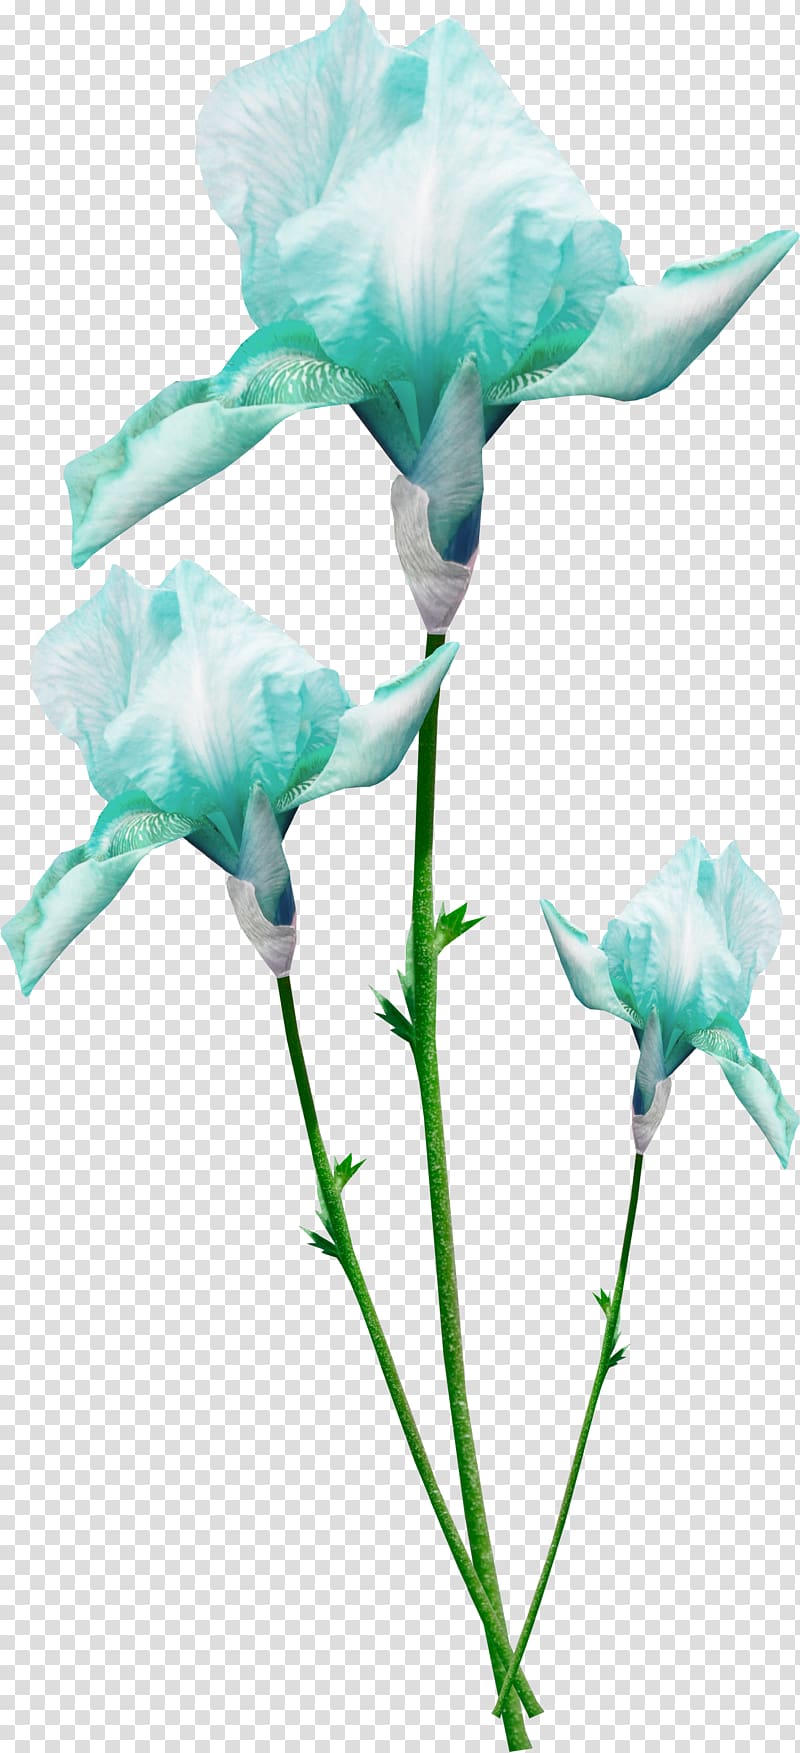 Blue Color, Cool colors flowers transparent background PNG clipart